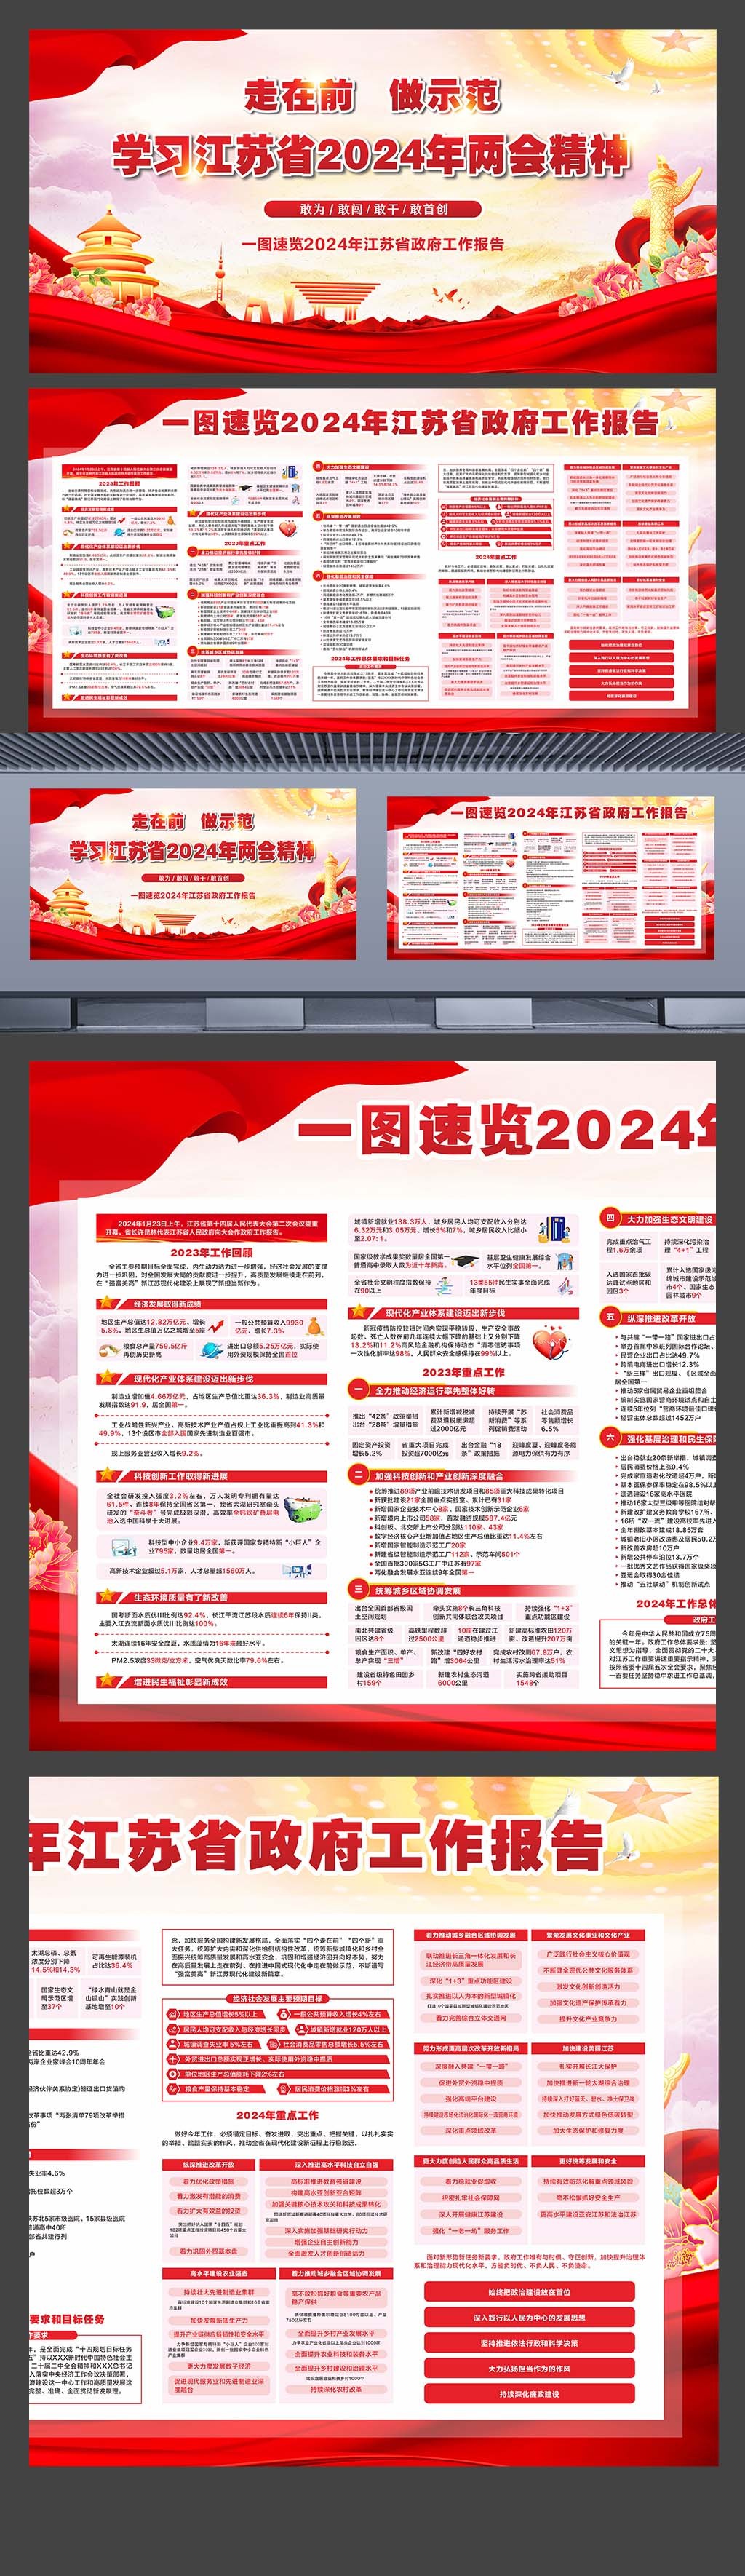 学习江苏省2024年两会精神政府工作报告横板展板